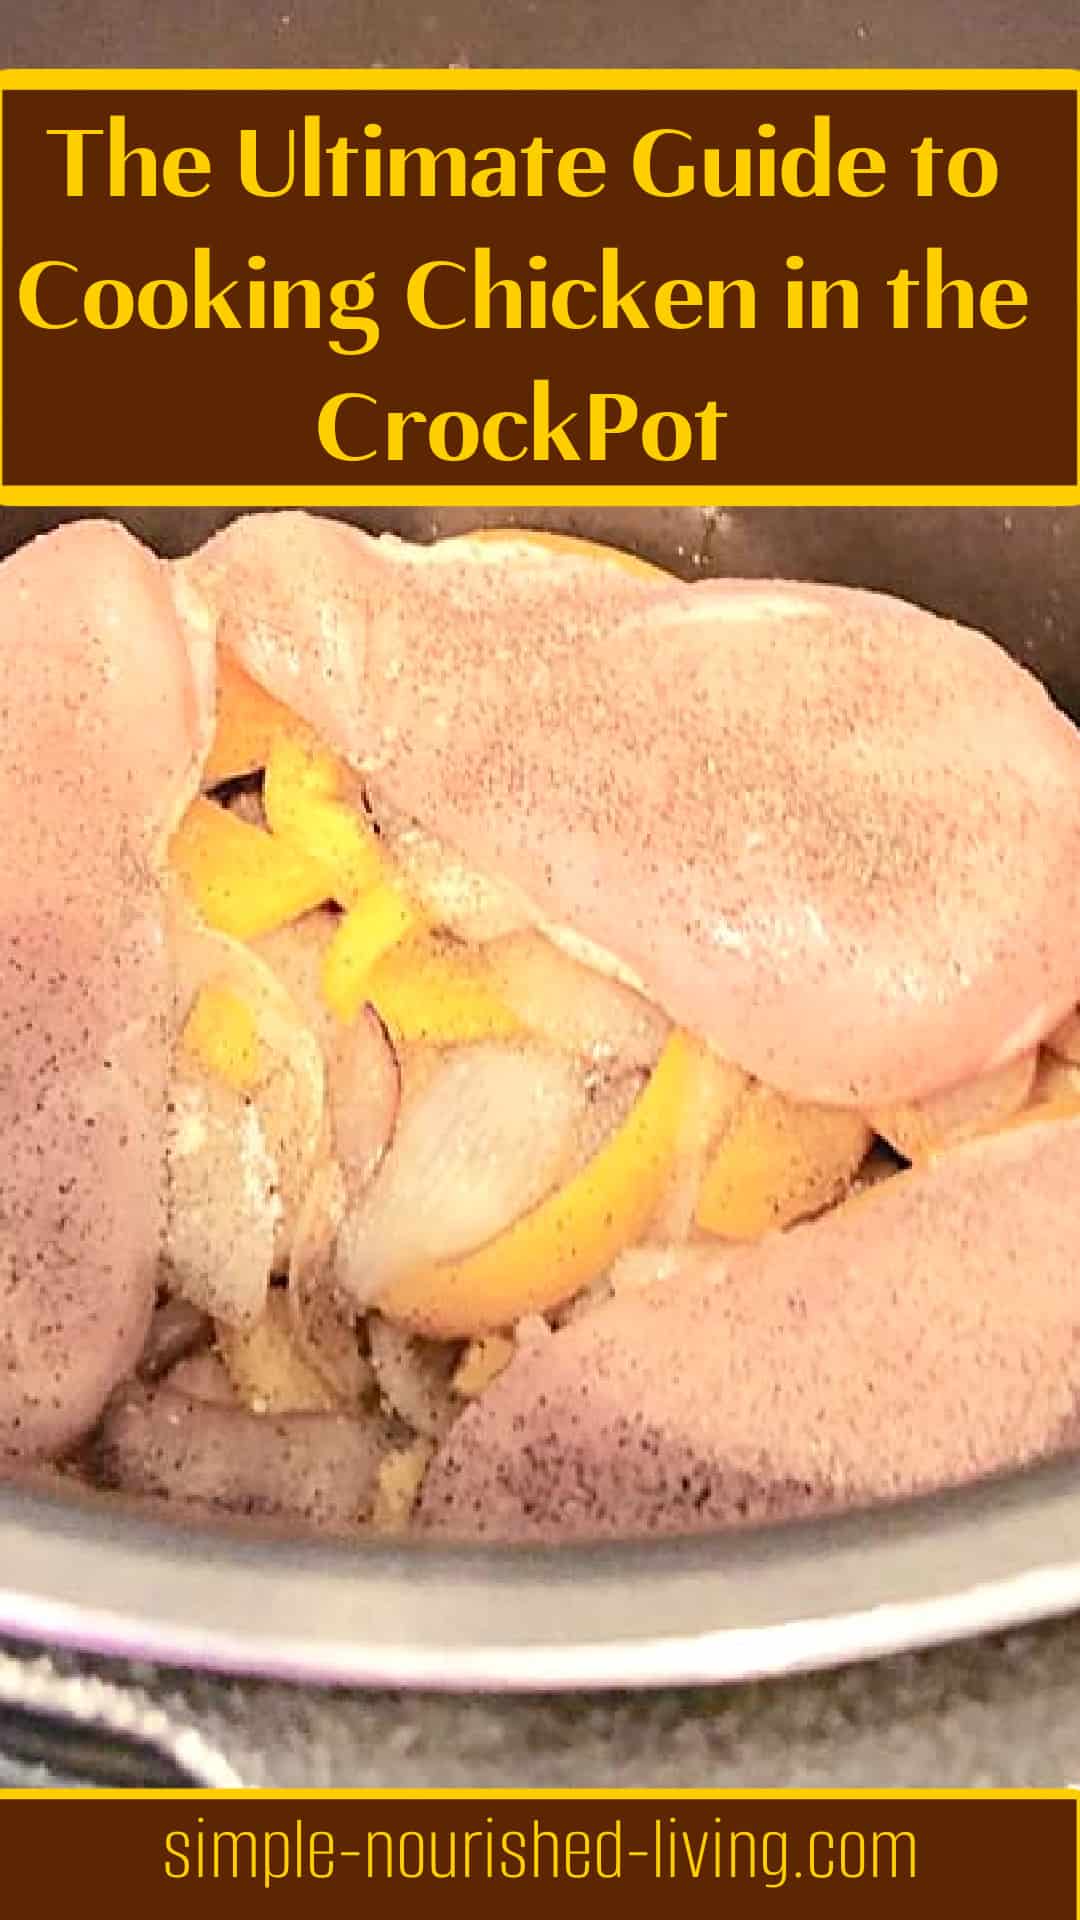 ωμό κοτόπουλο και κρεμμύδια σε κατσαρόλα με κείμενο: "Ο απόλυτος οδηγός για το μαγείρεμα κοτόπουλου στο κατσαρόλα"